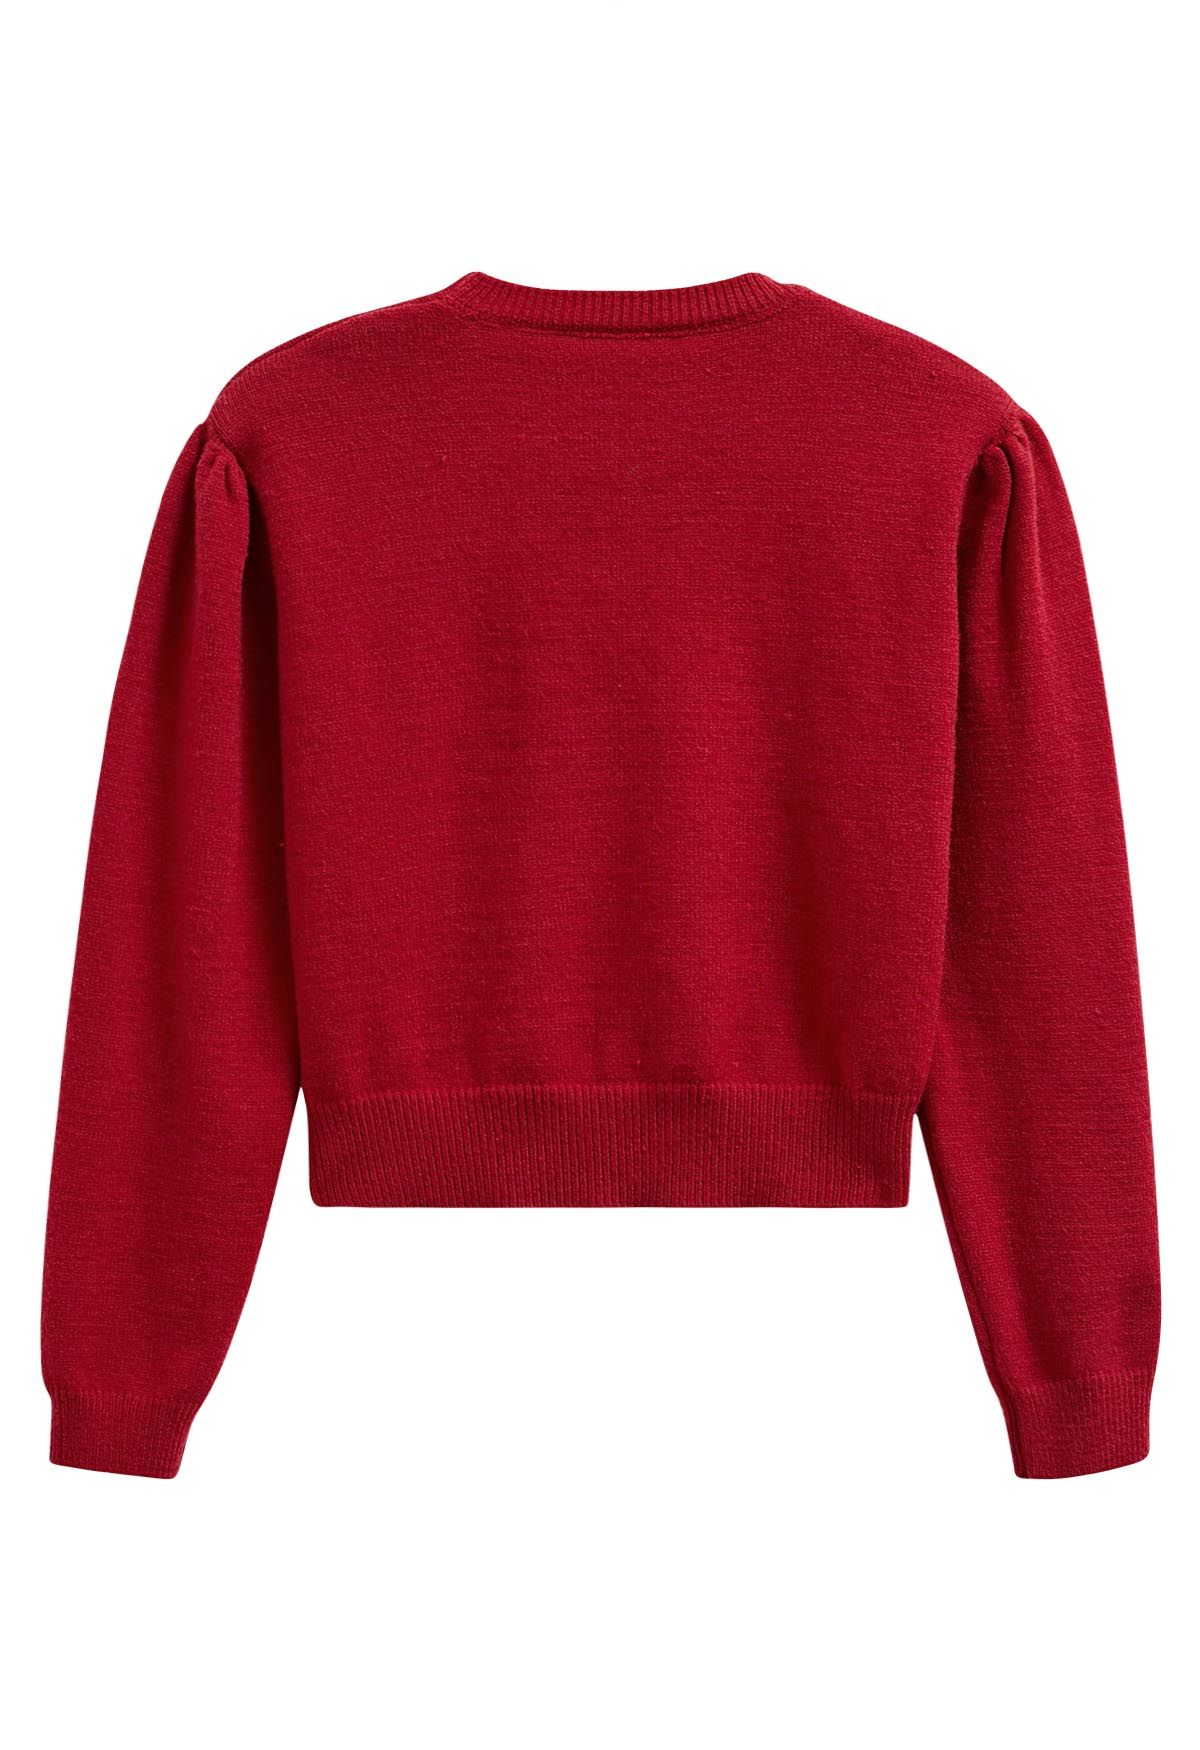 Sweet Heart Cozy Knit Sweater in Red